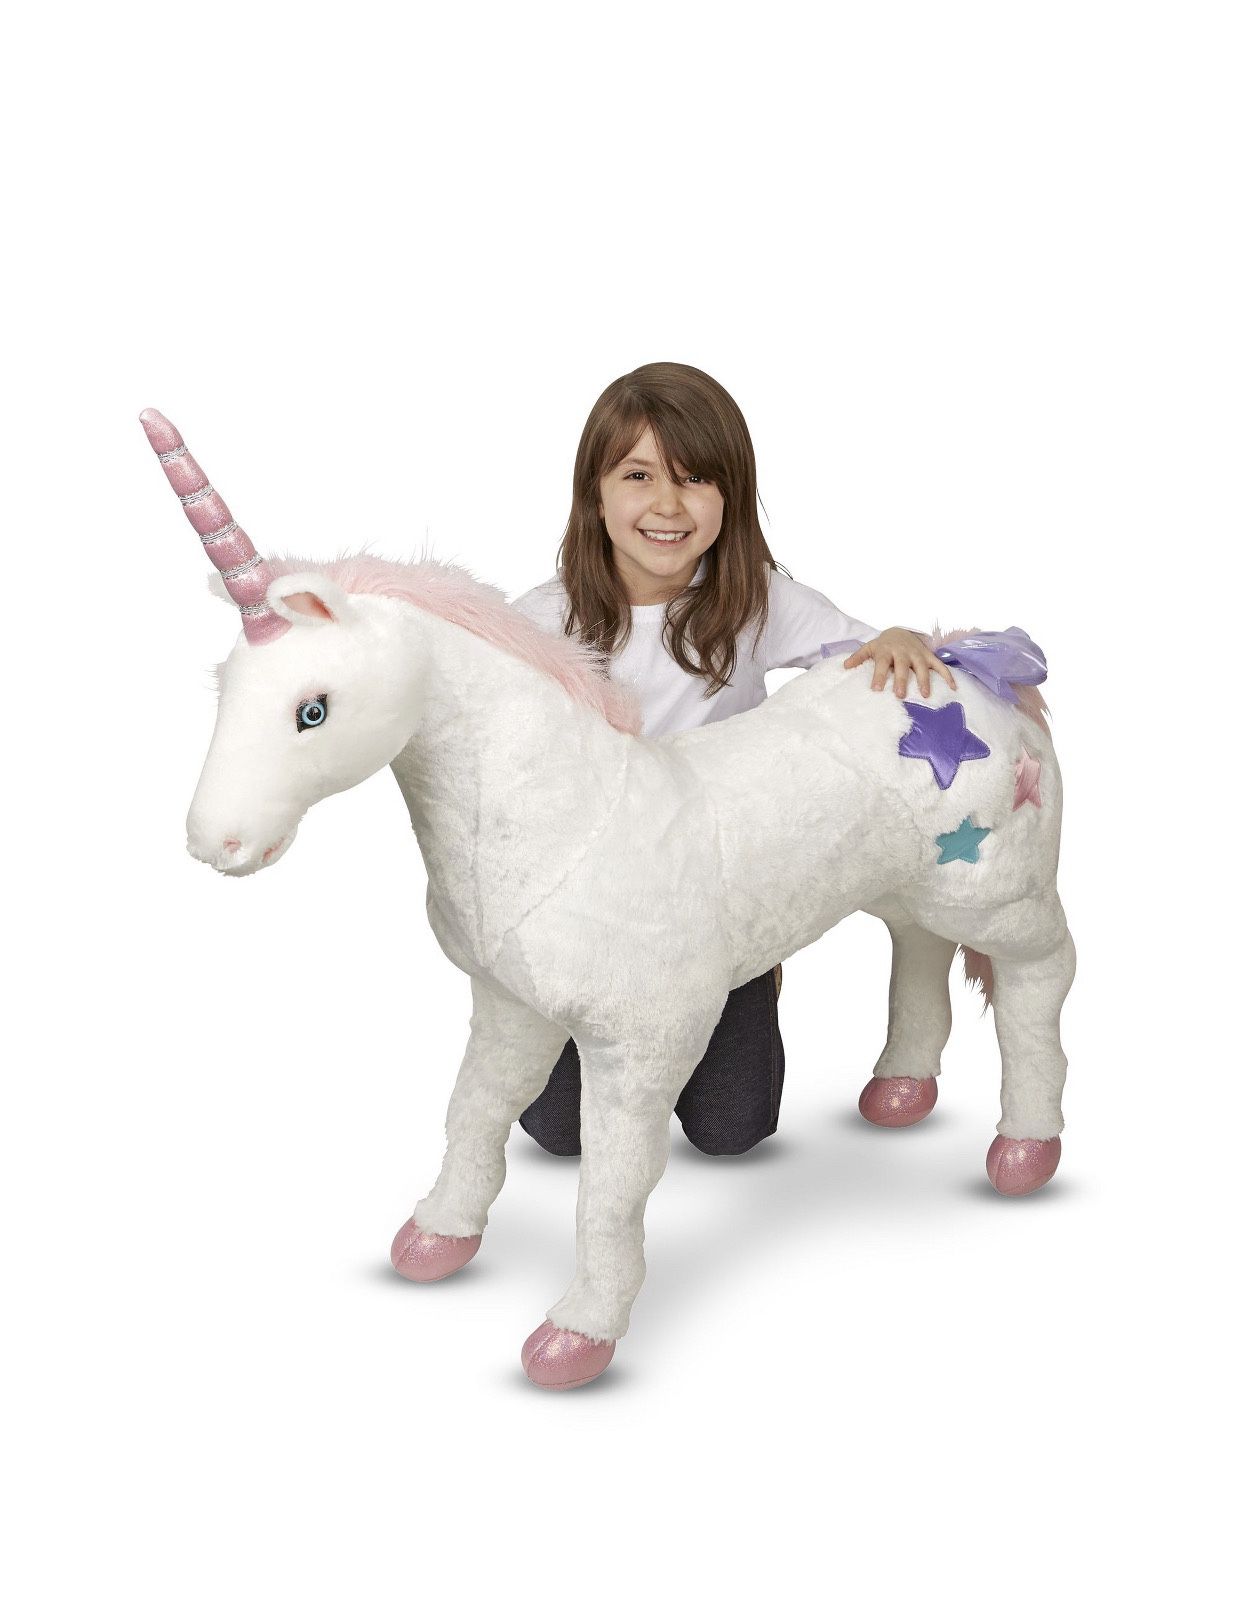 Melissa & Doug Giant Unicorn Plush Stuffed Animal